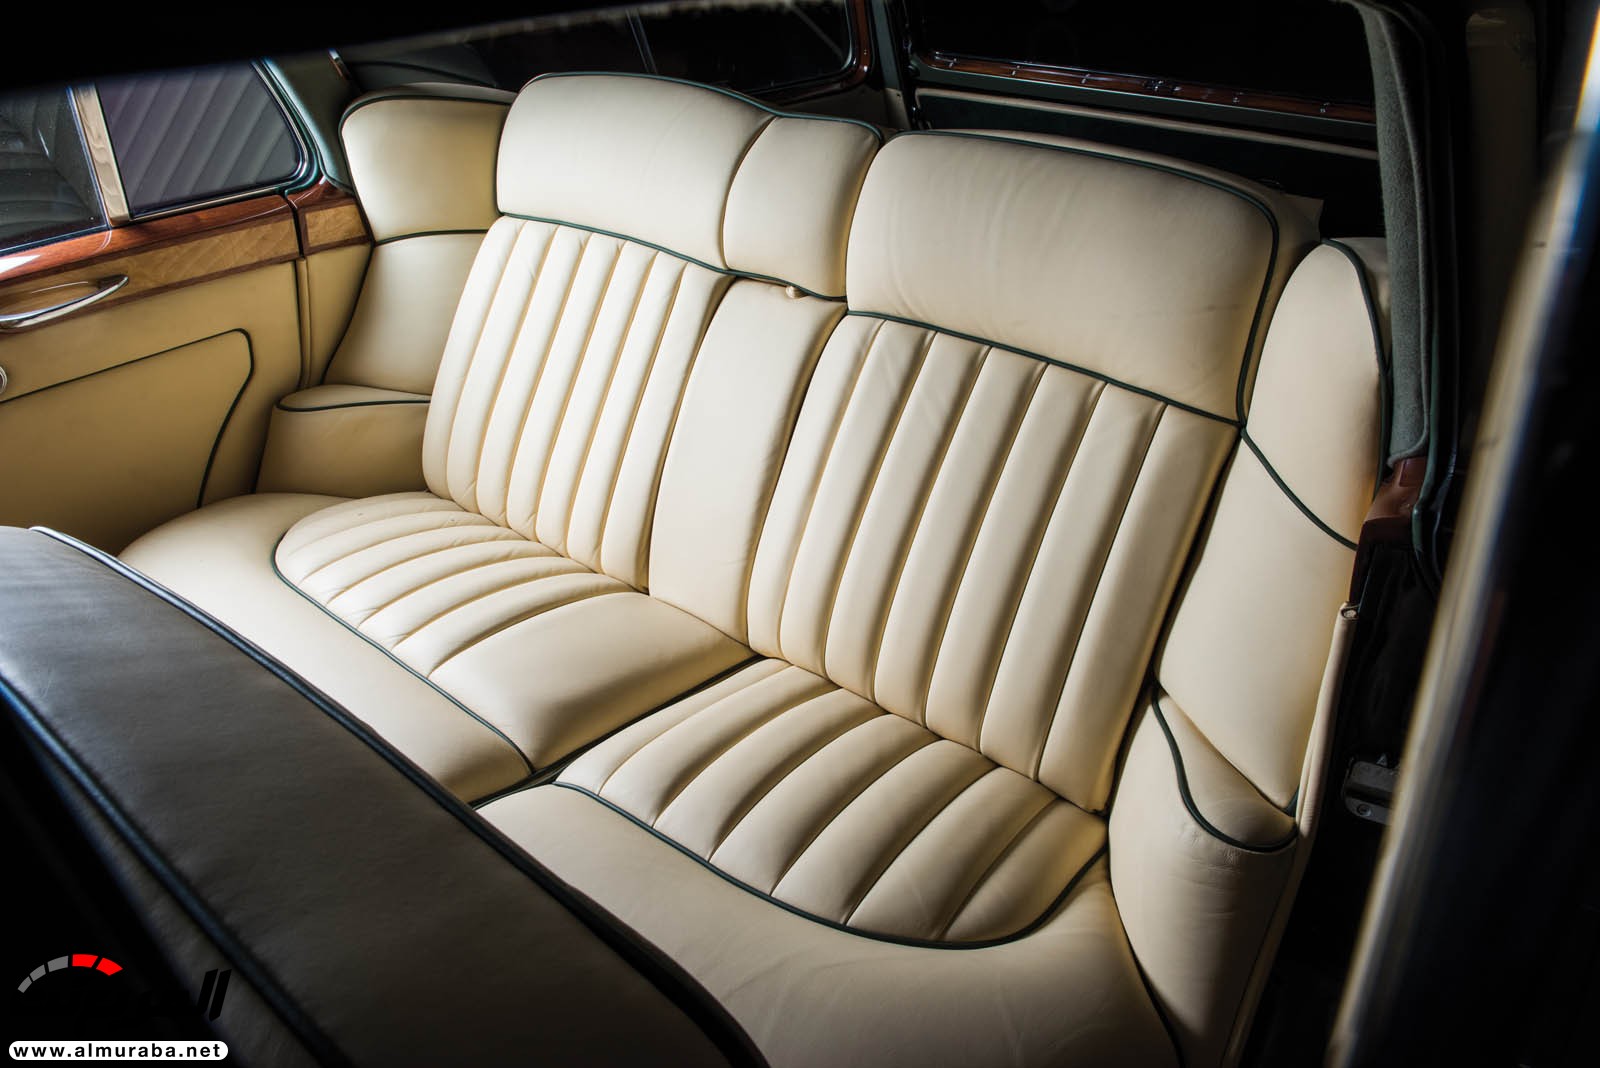 "رولز رويس" سيلفر كلاود 1959 ذات هيكلة الواجن تتوجه لتباع في مزاد عالمي Rolls-Royce Silver Cloud 83